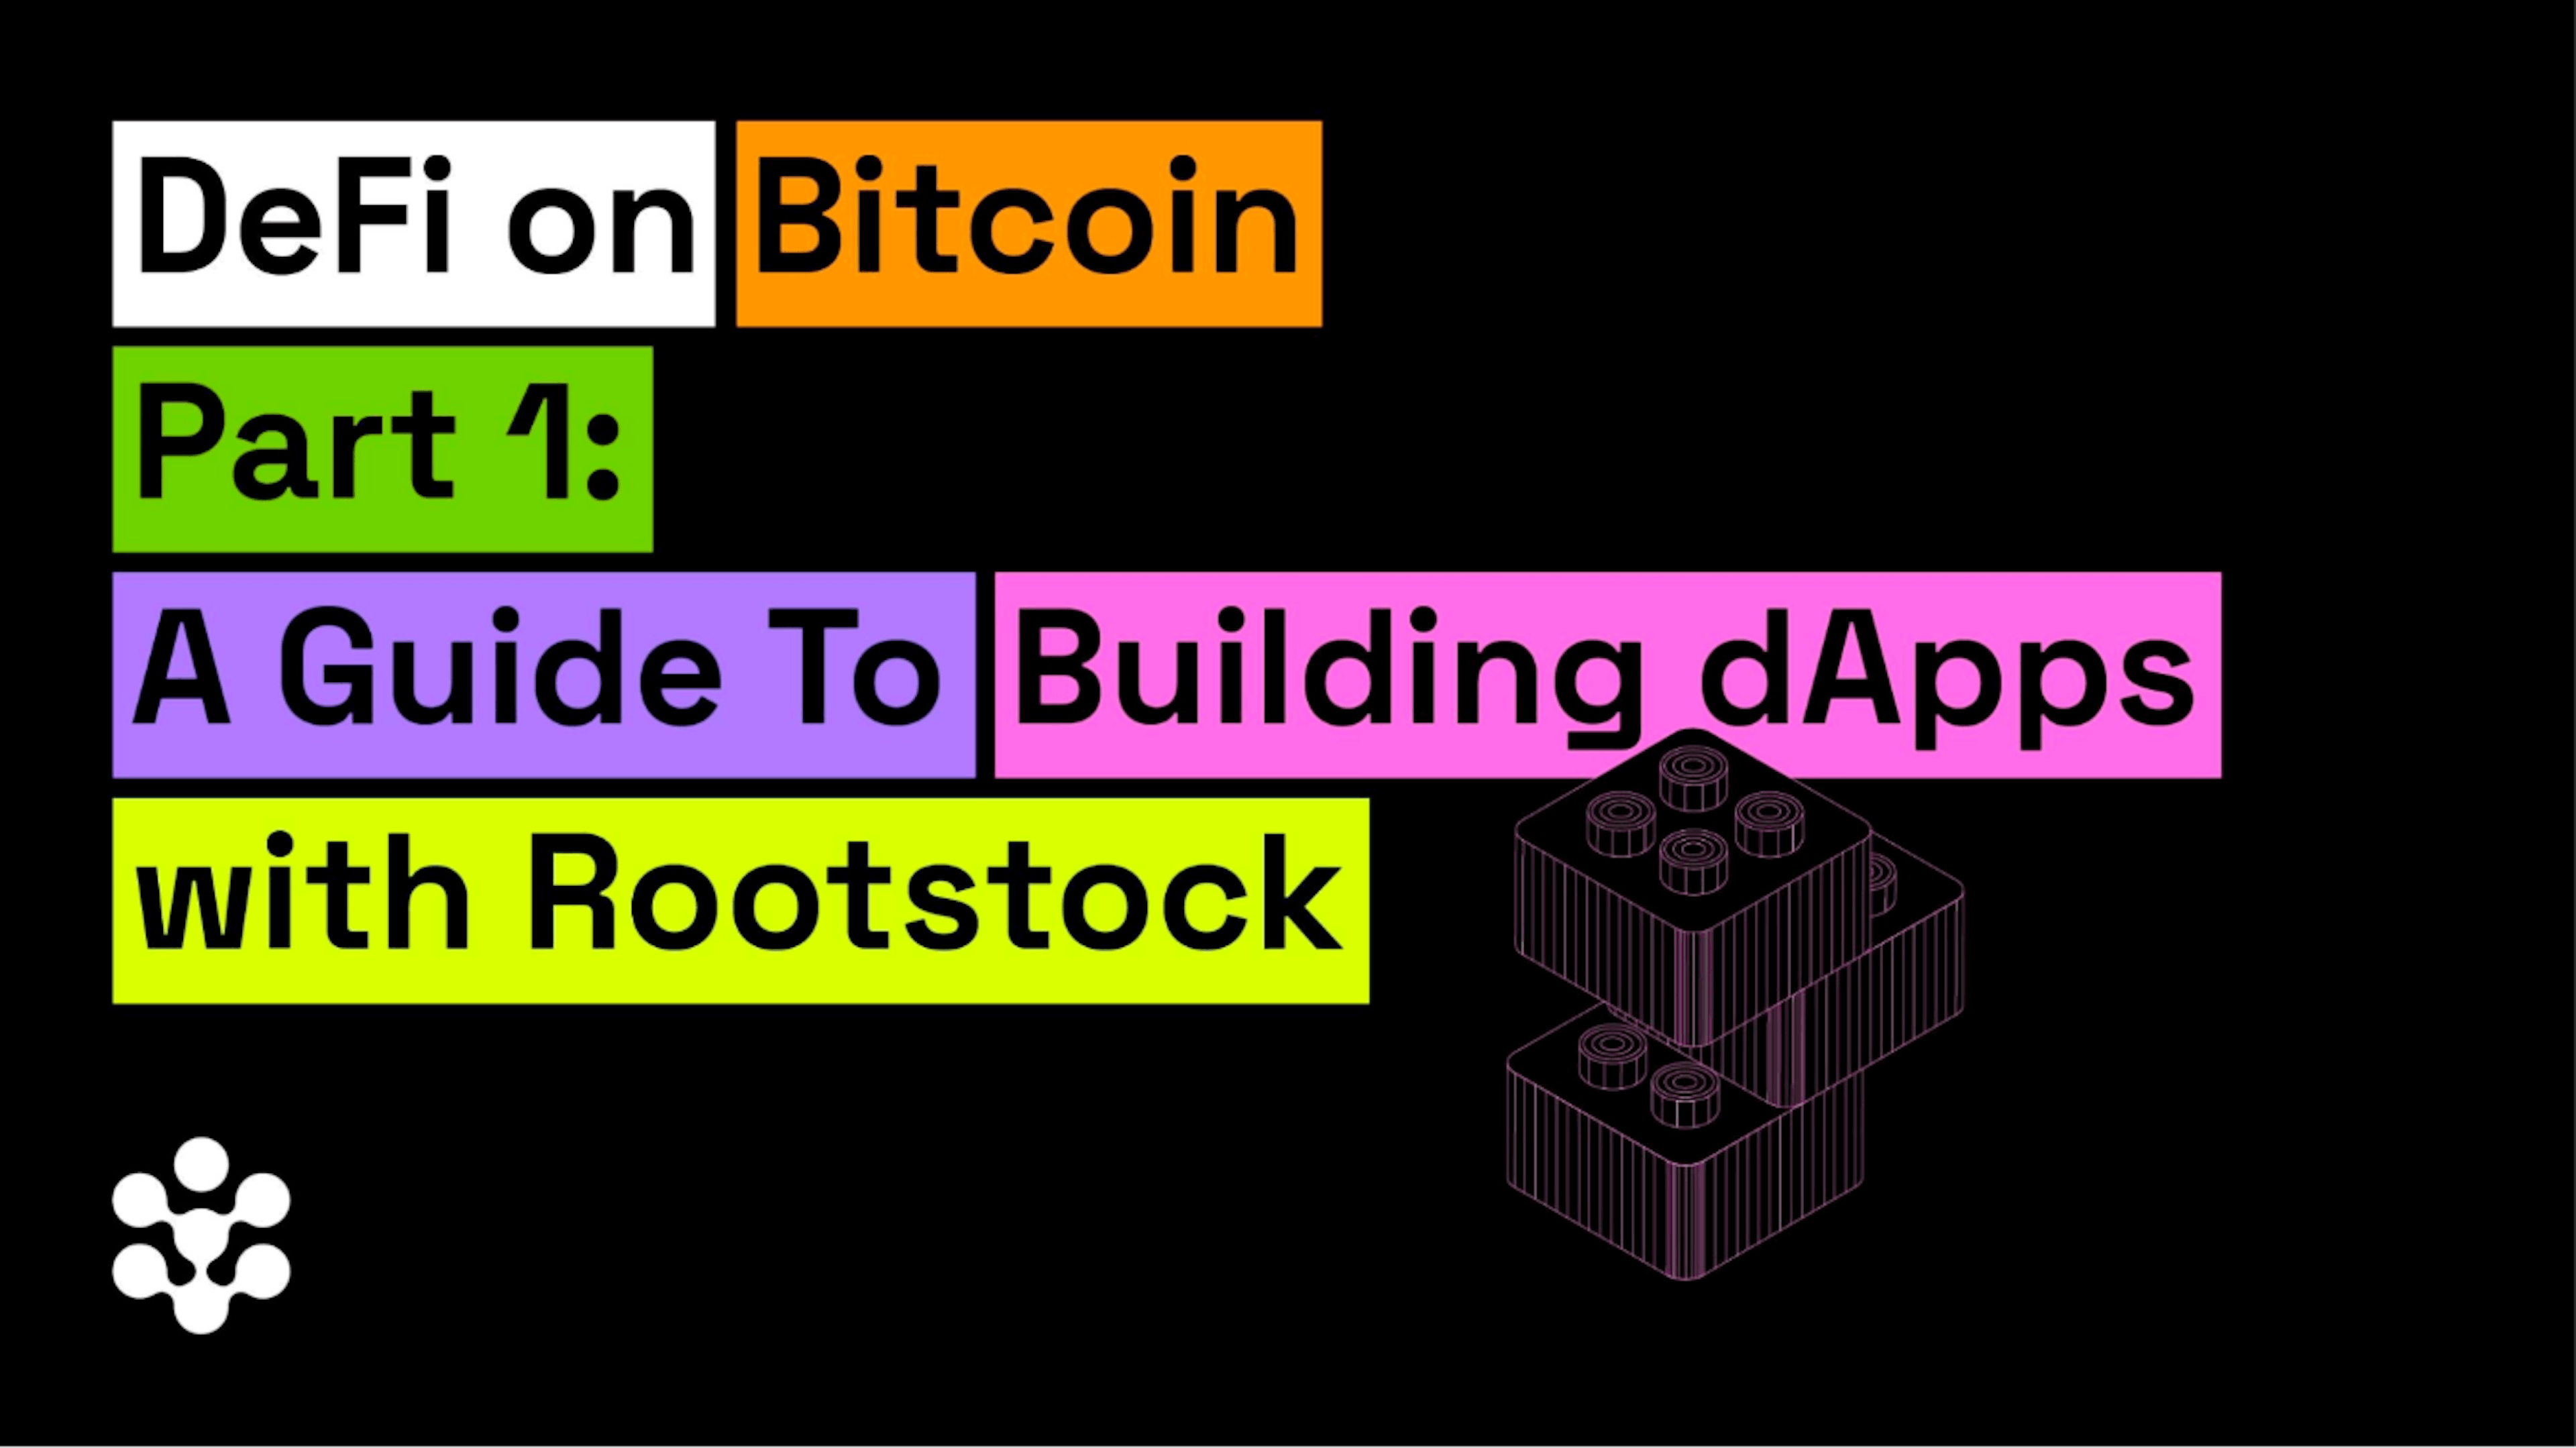 featured image - DeFi trên Bitcoin Phần 1: Hướng dẫn xây dựng dApps với Rootstock